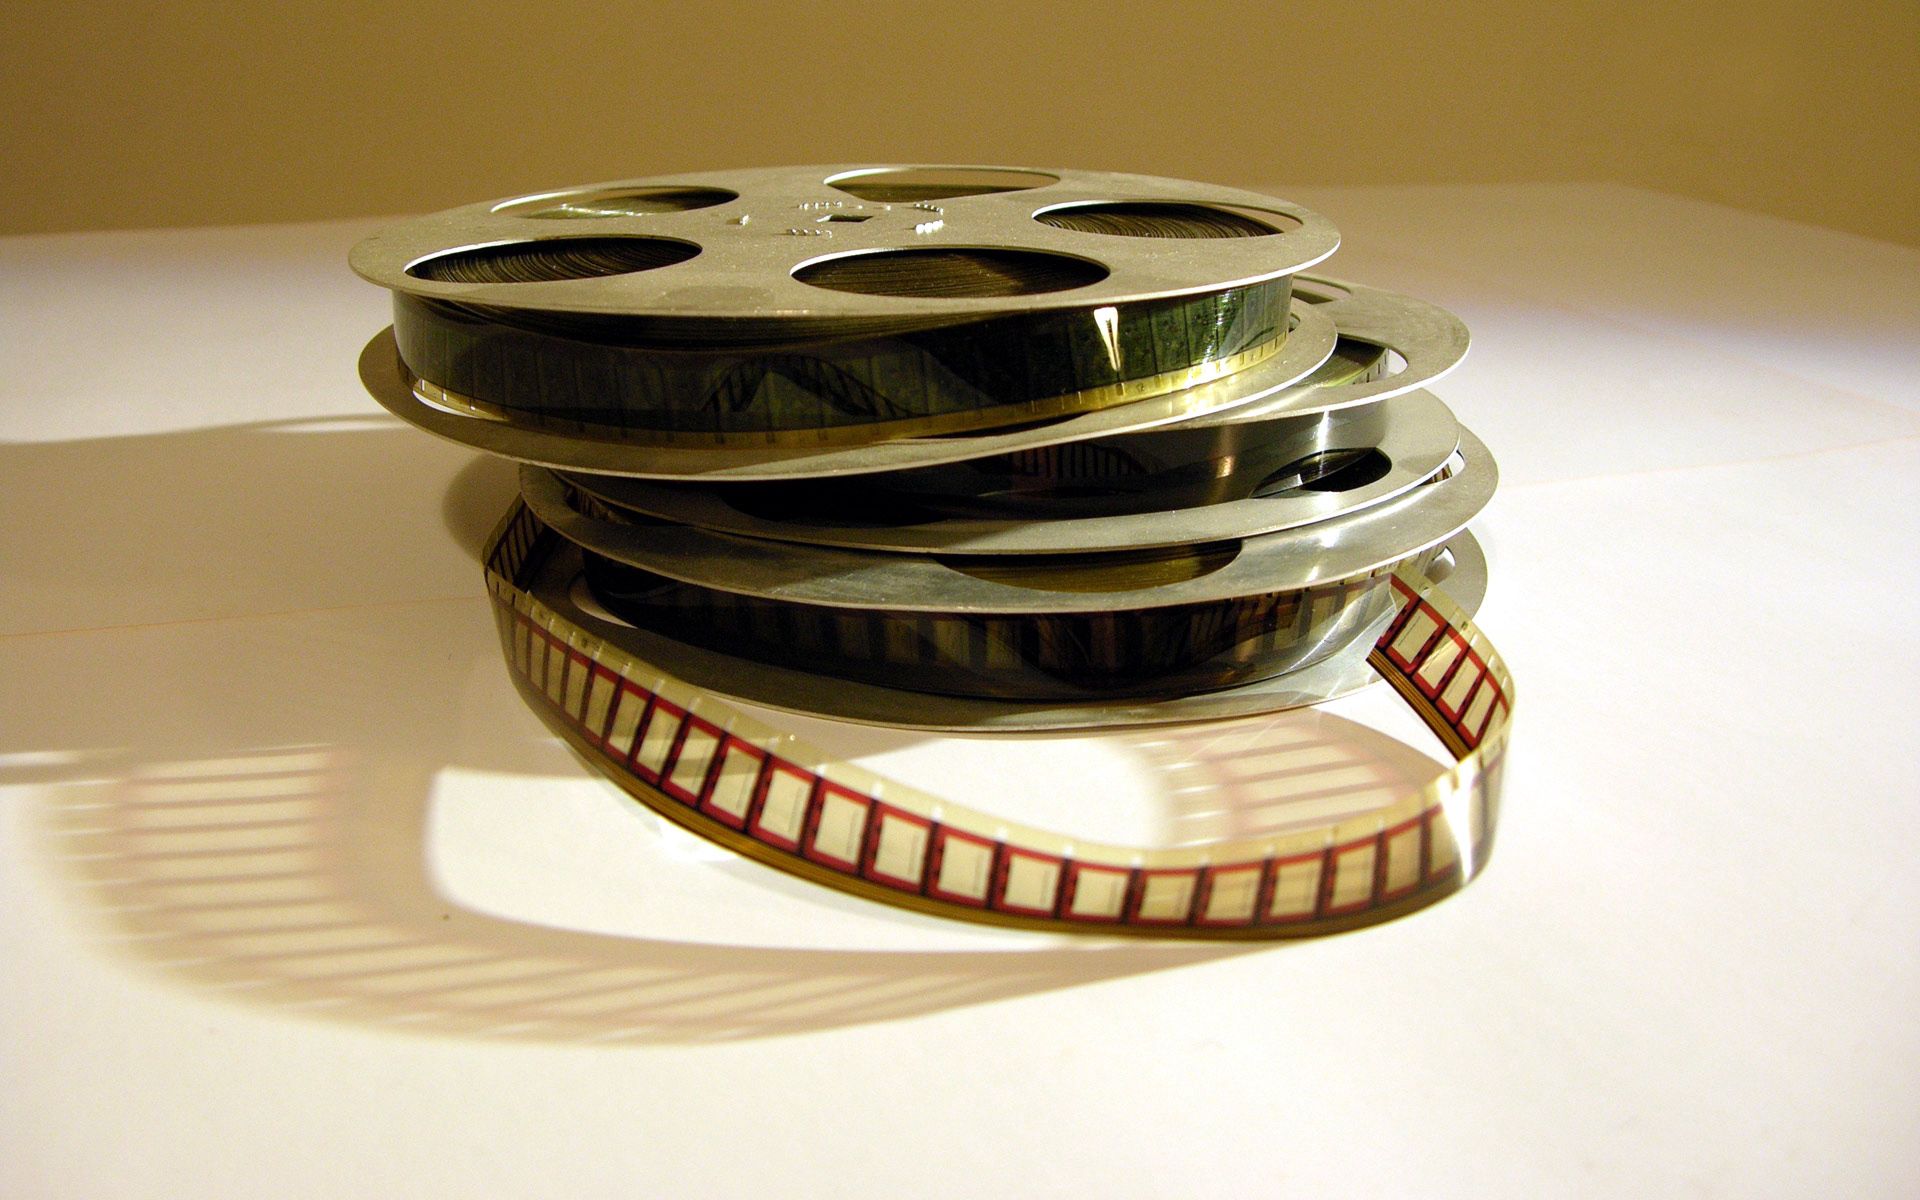 film, miscellanea, miscellaneous, disk, device, rarity, video